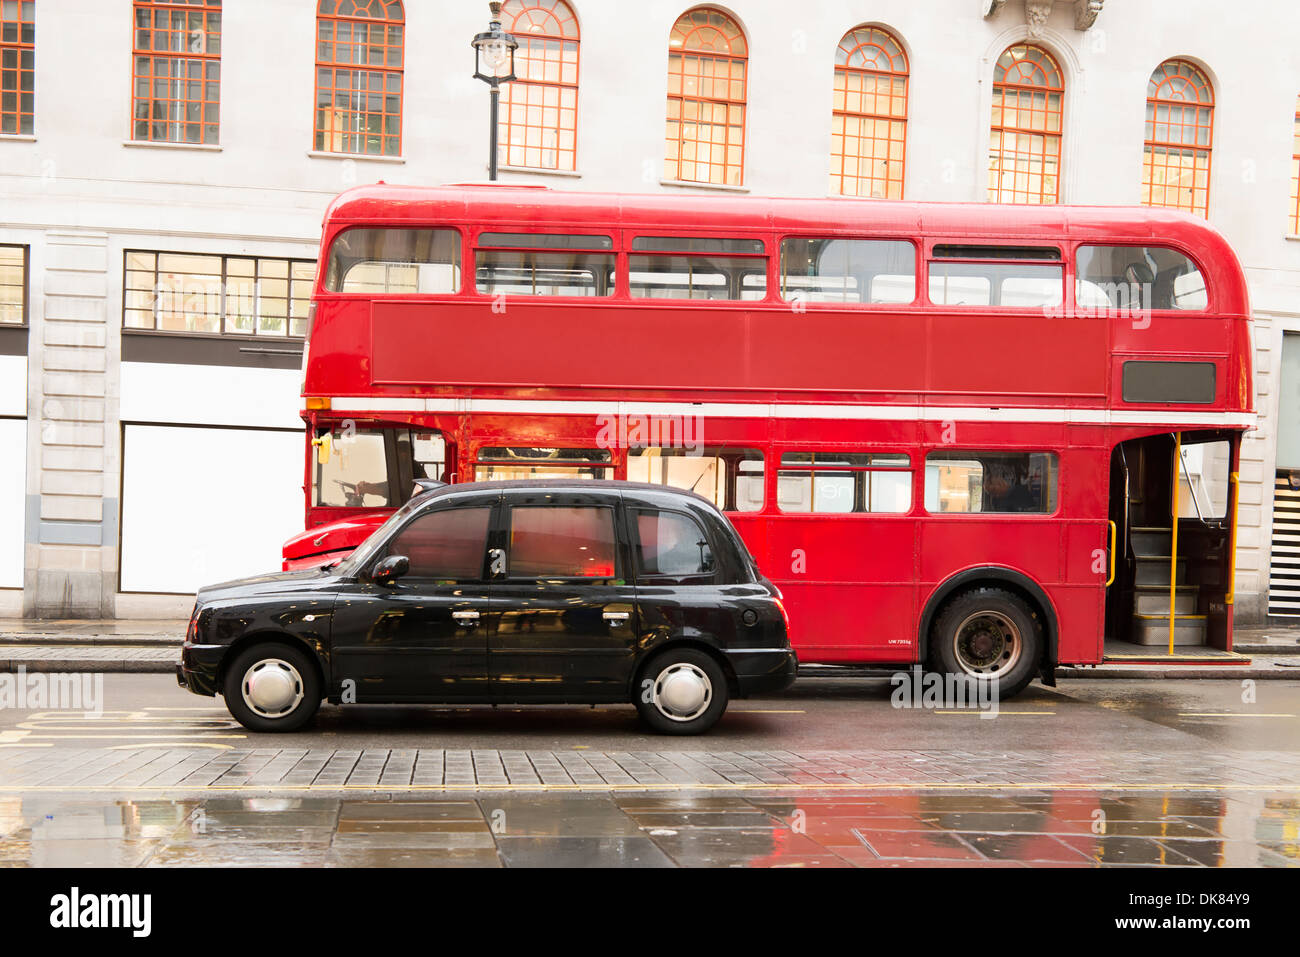 Red bus d'époque et de style classique taxi à Londres. Visite de la ville de Londres Banque D'Images